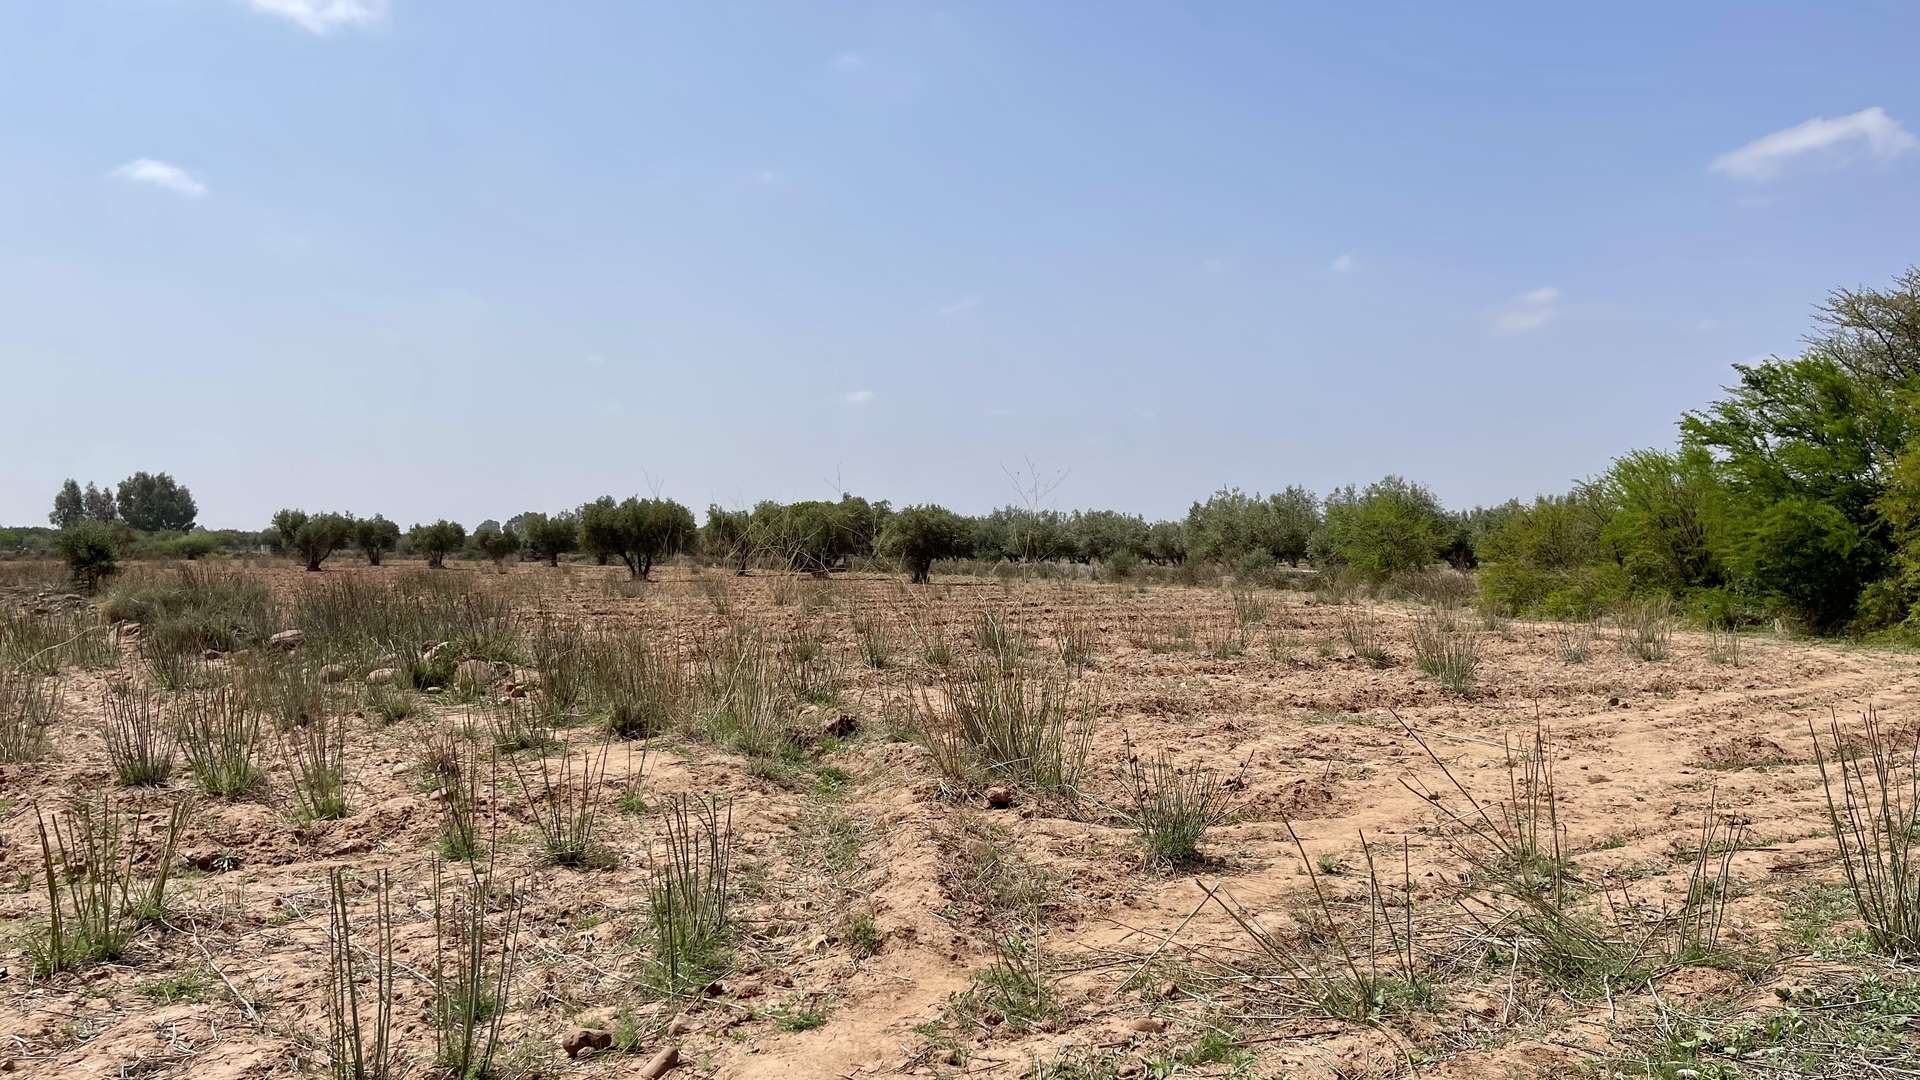 Vente,Terrains & Fermes,Lot de terrain titré 4 ha à Ghmate 28km du centre de Marrakech,Marrakech,Route de l'Ourika